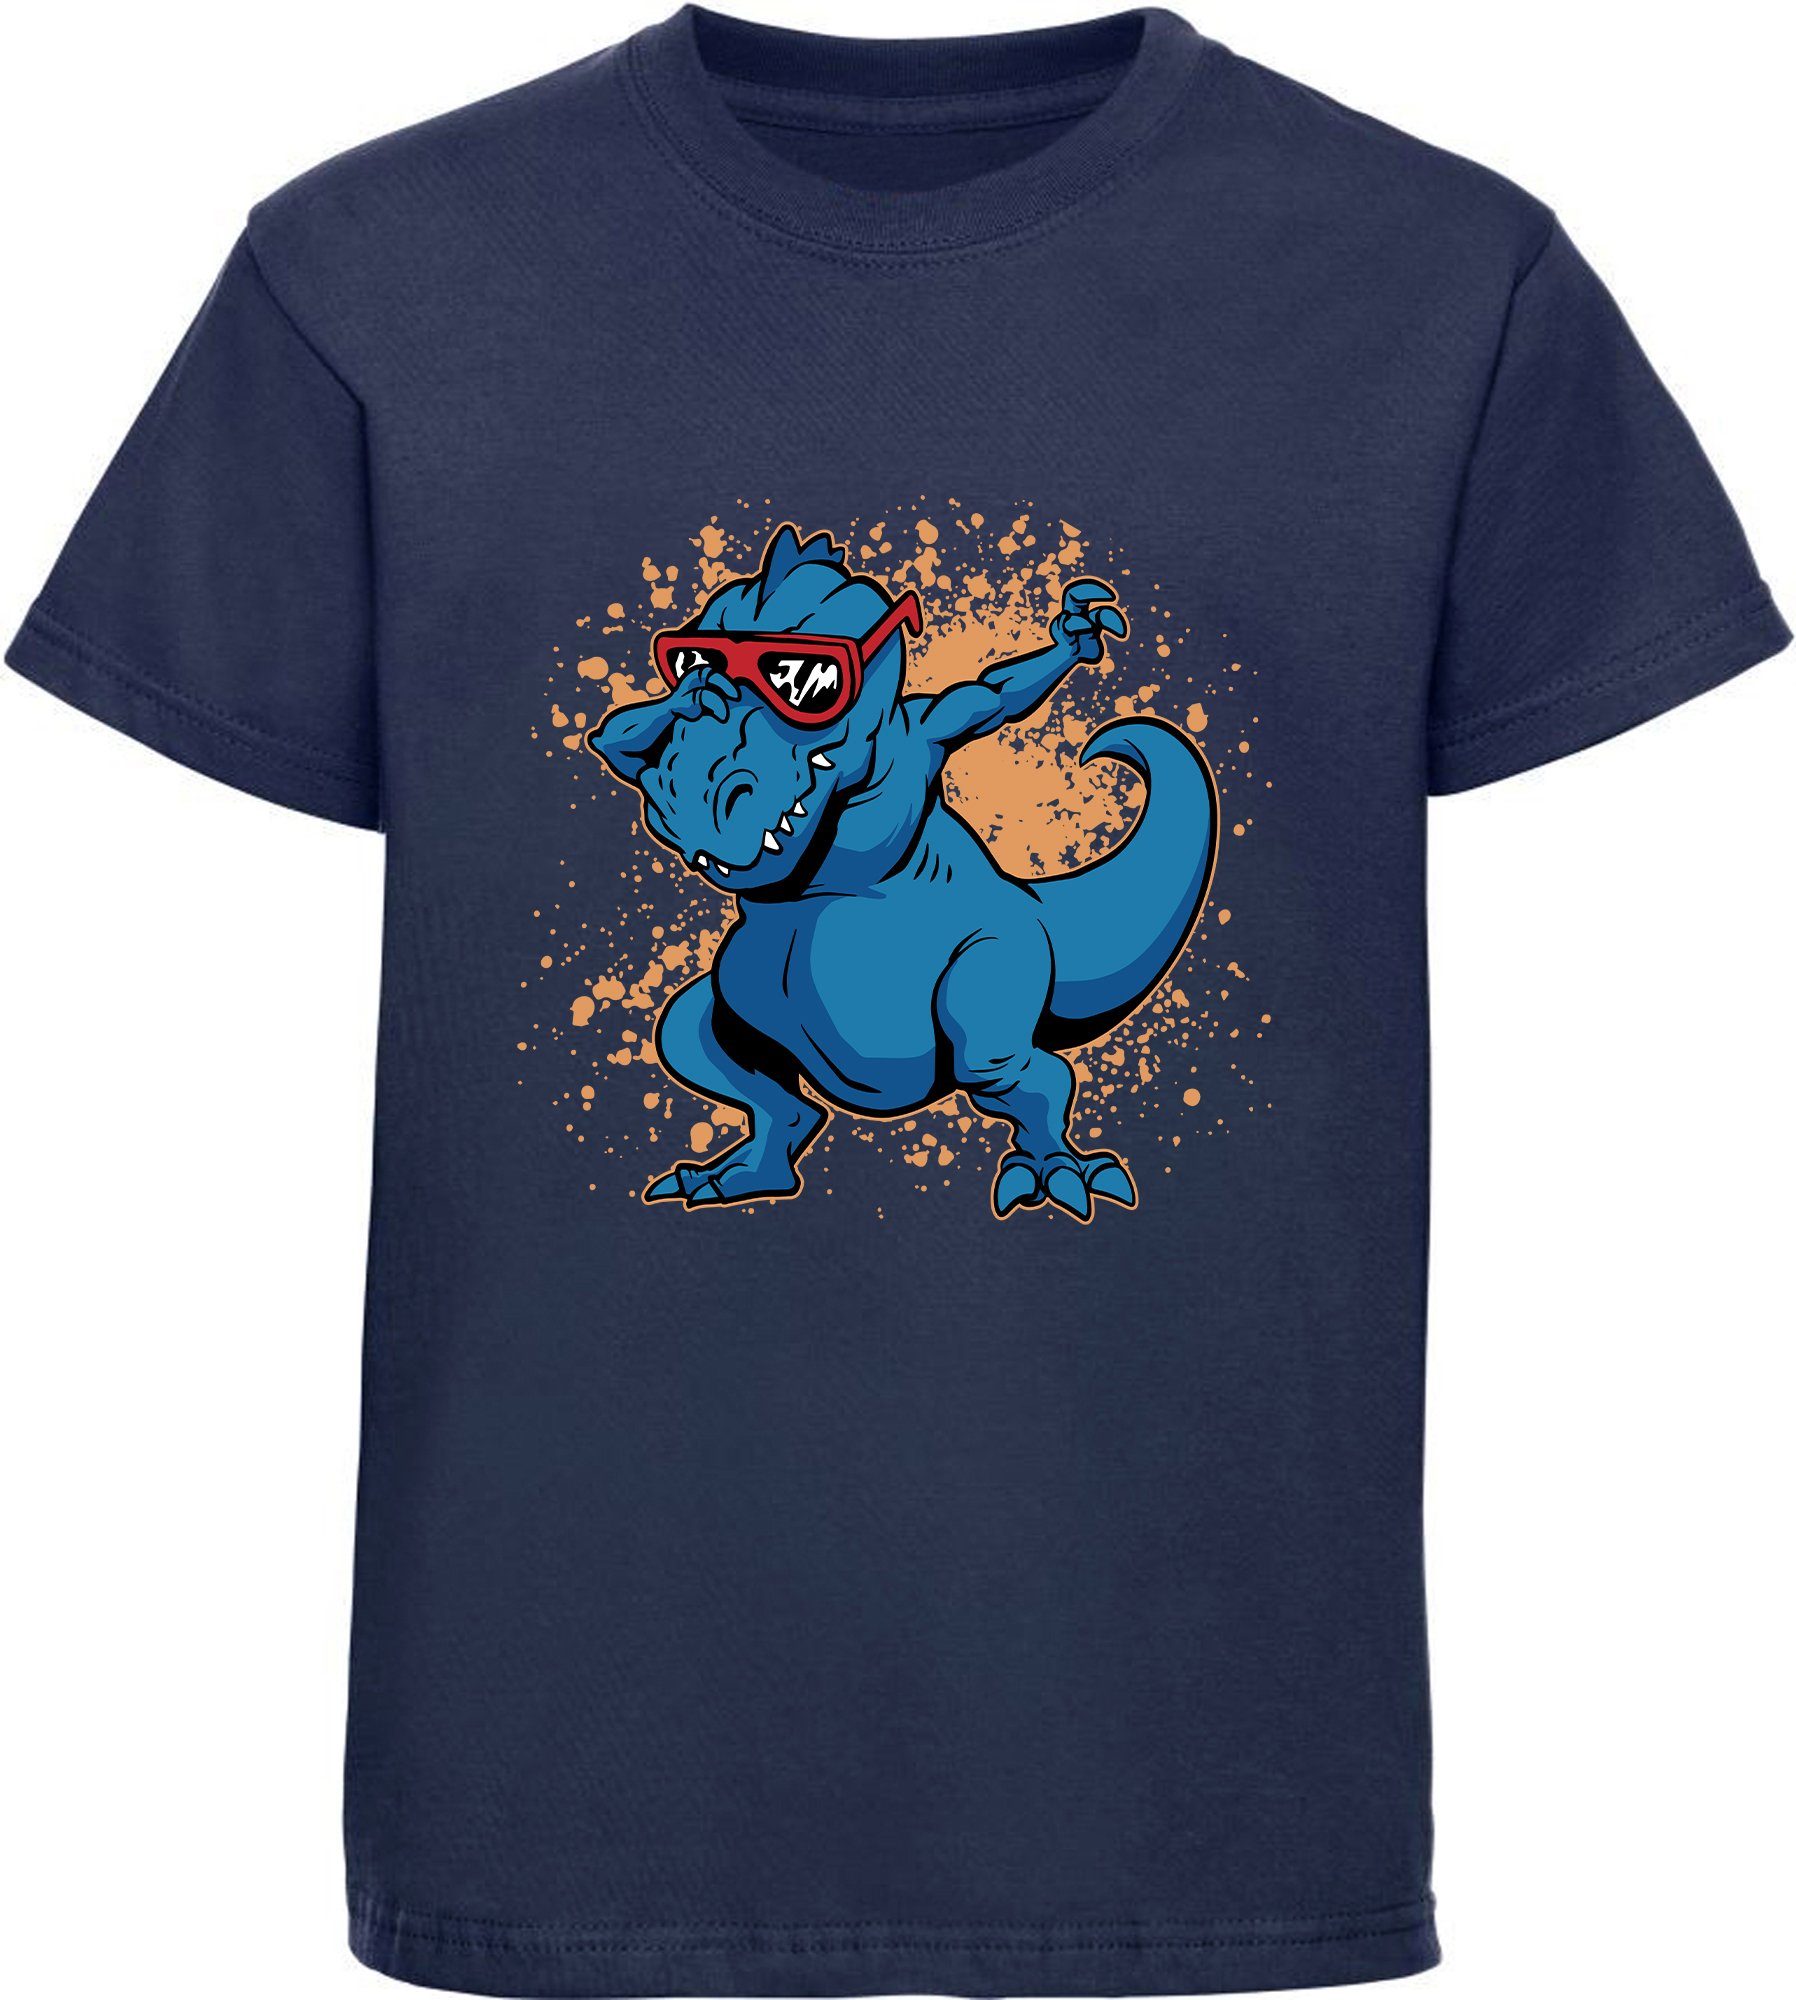 MyDesign24 T-Shirt bedrucktes Kinder T-Shirt T-Rex mit Brille am tanzen 100% Baumwolle mit Dino Aufdruck, navy blau i49